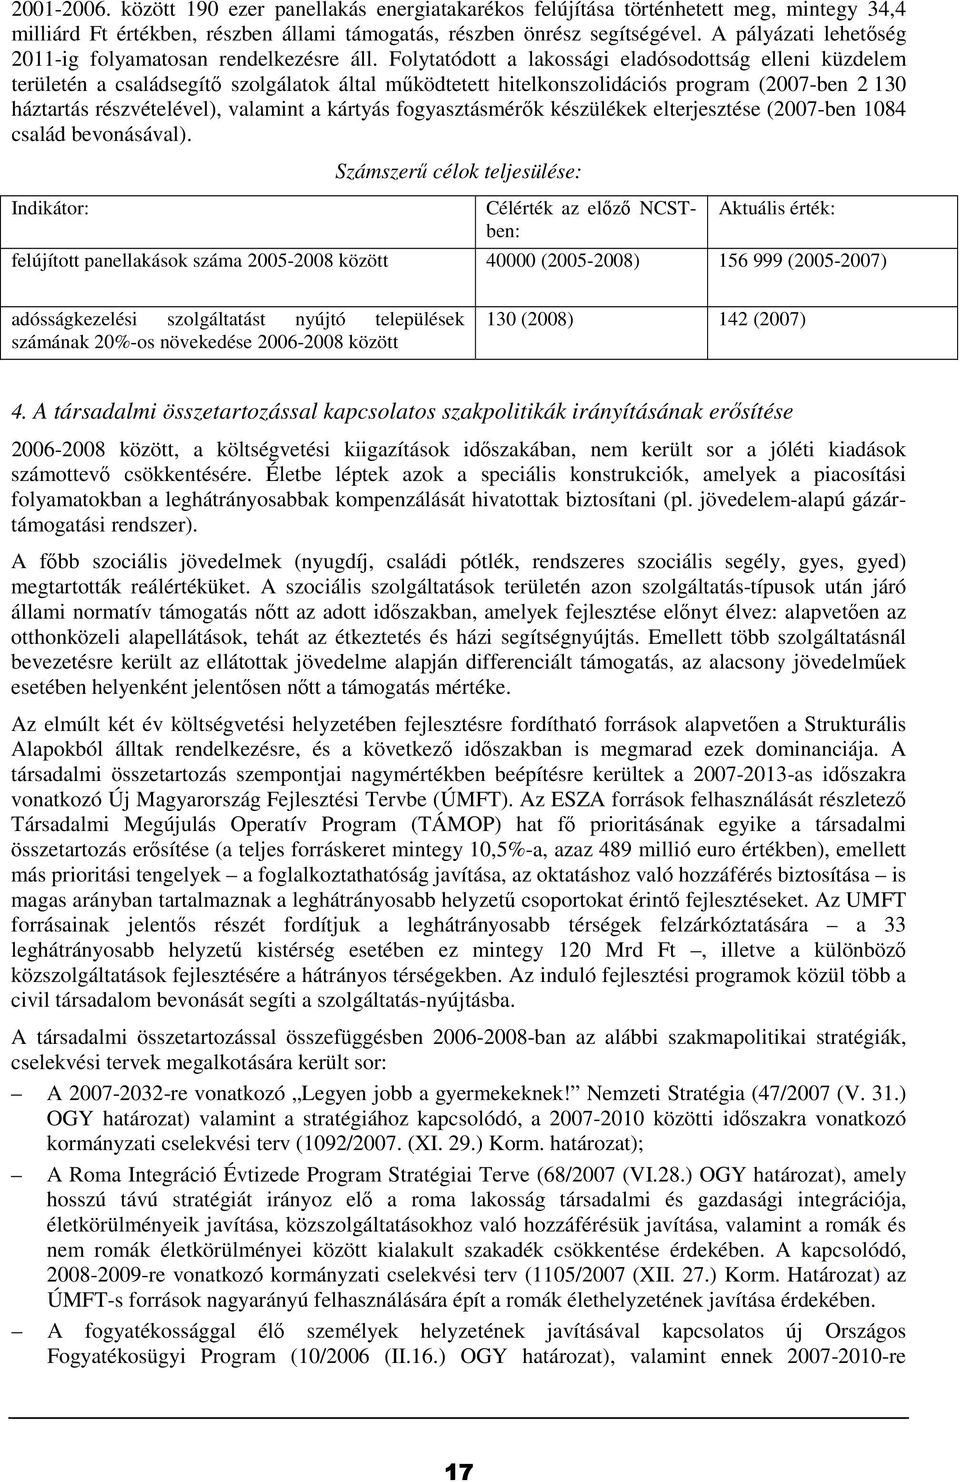 Folytatódott a lakossági eladósodottság elleni küzdelem területén a családsegítı szolgálatok által mőködtetett hitelkonszolidációs program (2007-ben 2 130 háztartás részvételével), valamint a kártyás